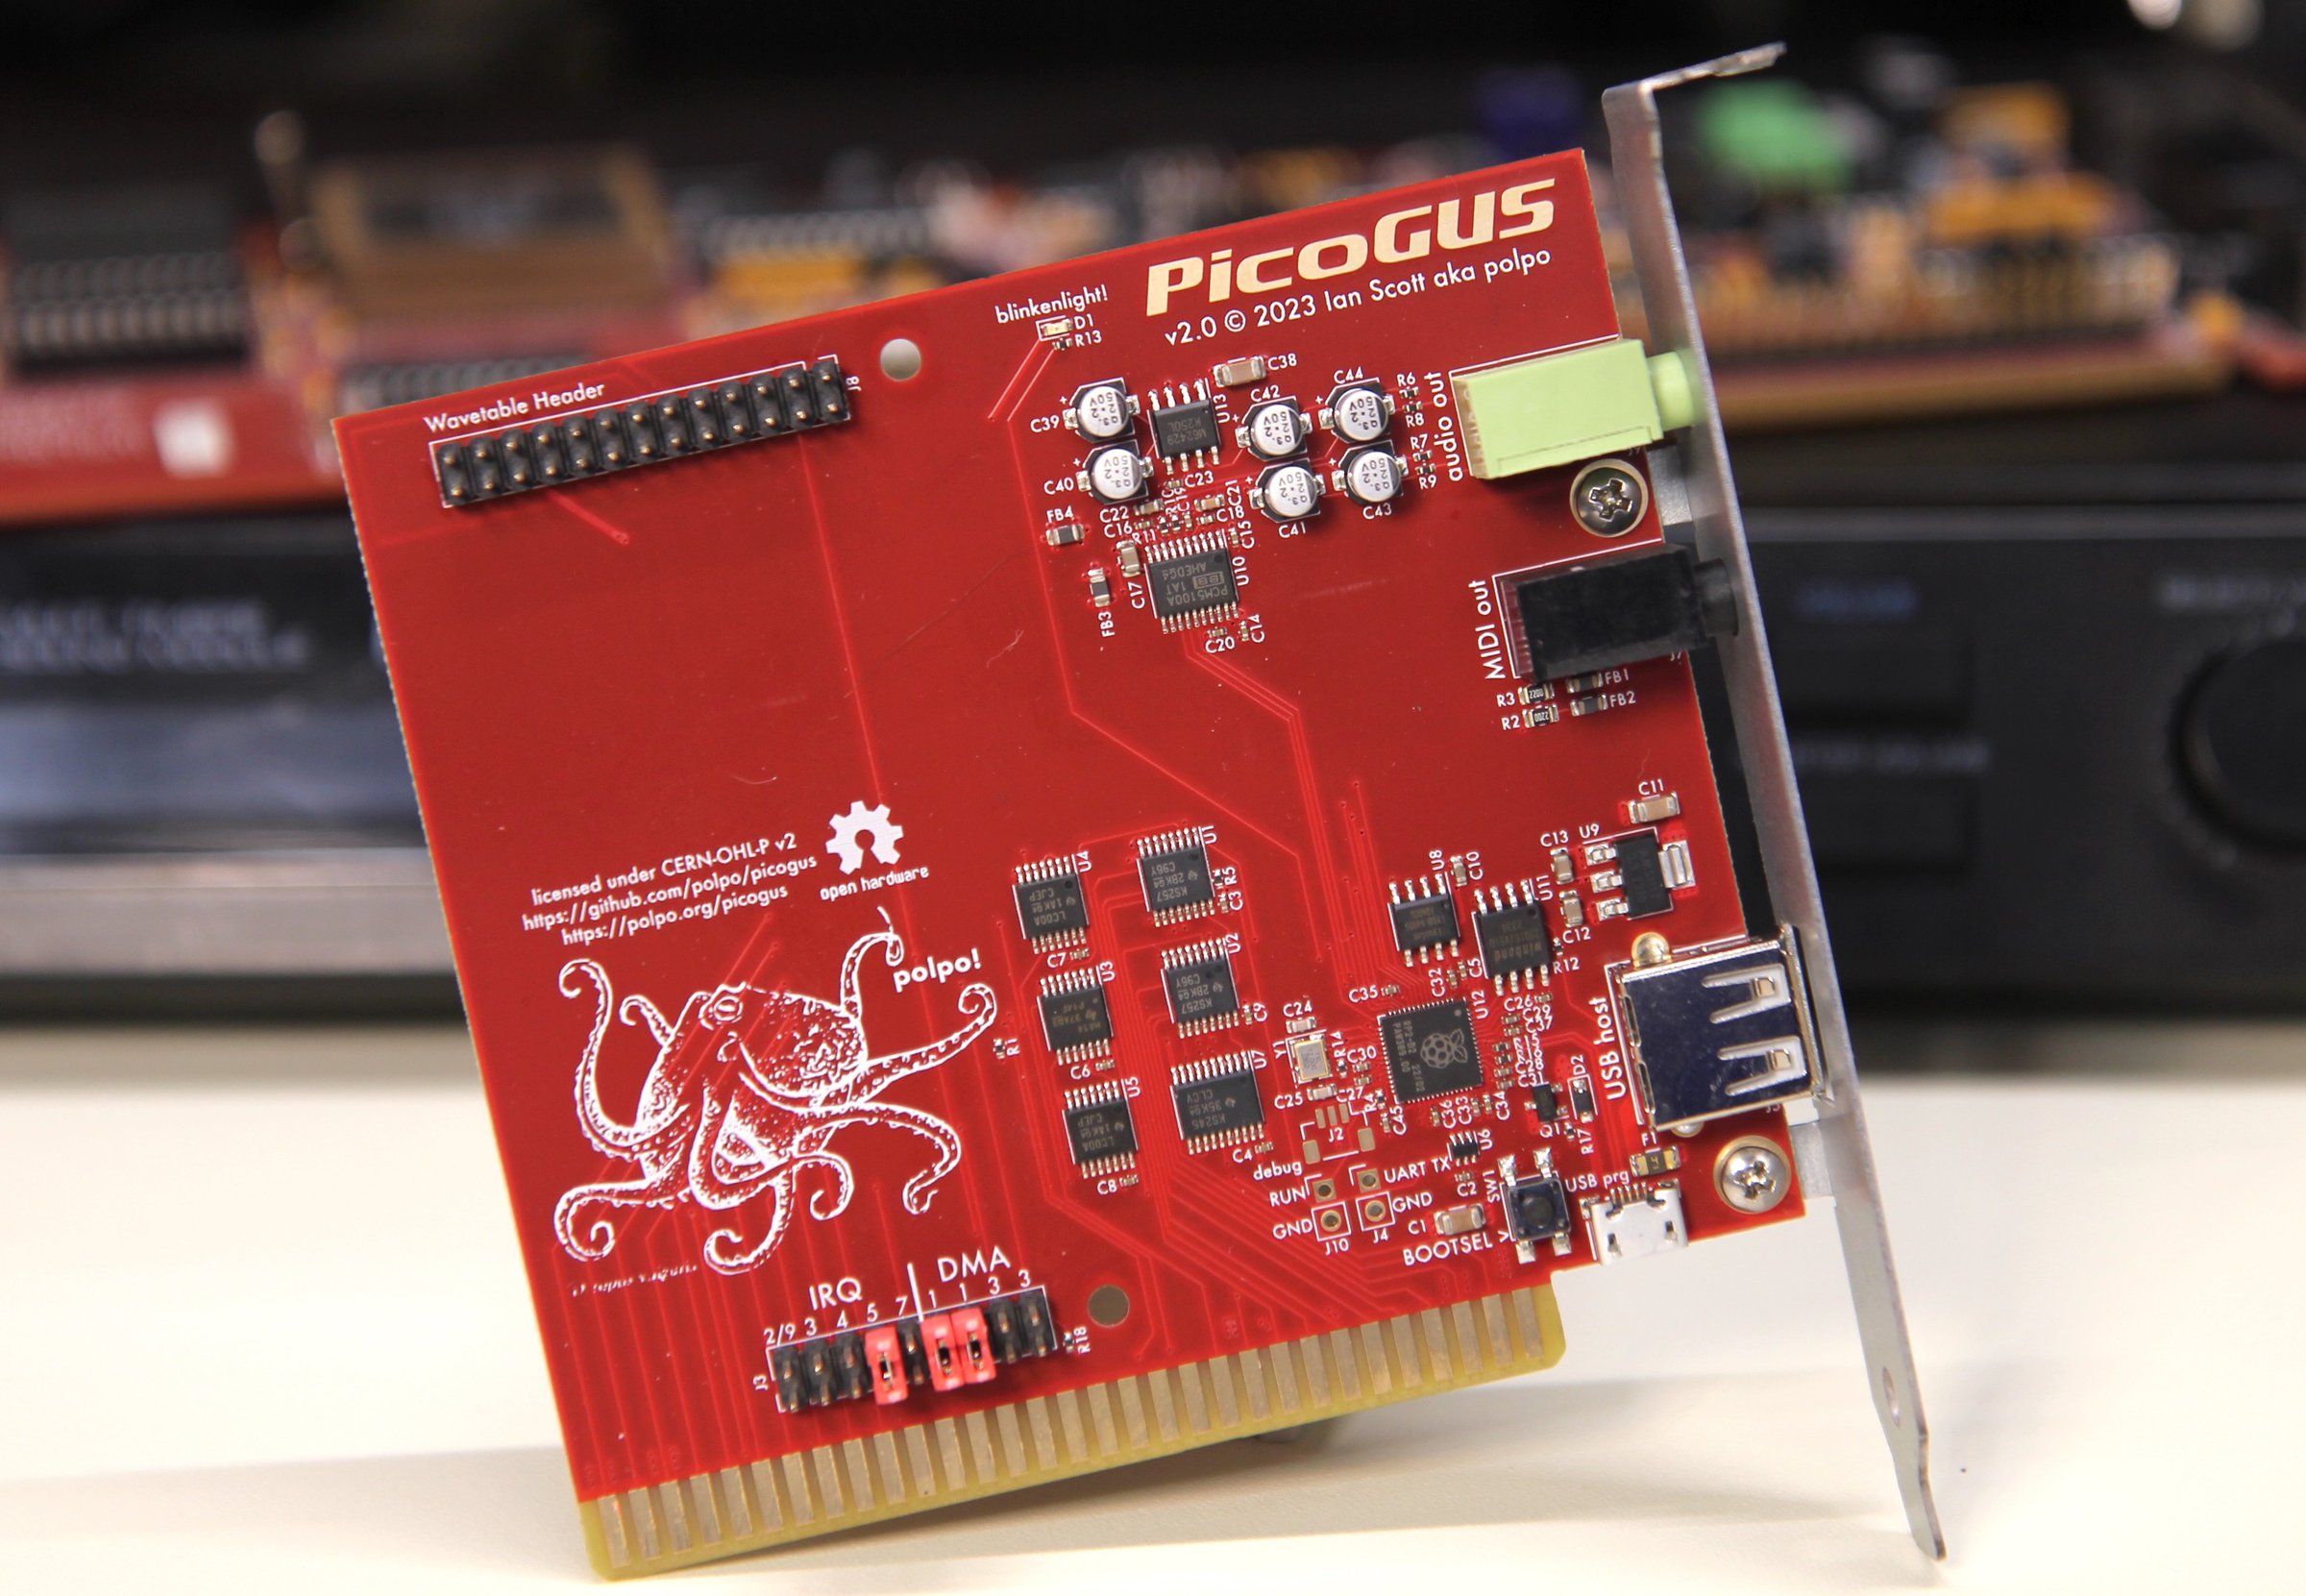 PicoGUS 2.0 PCB